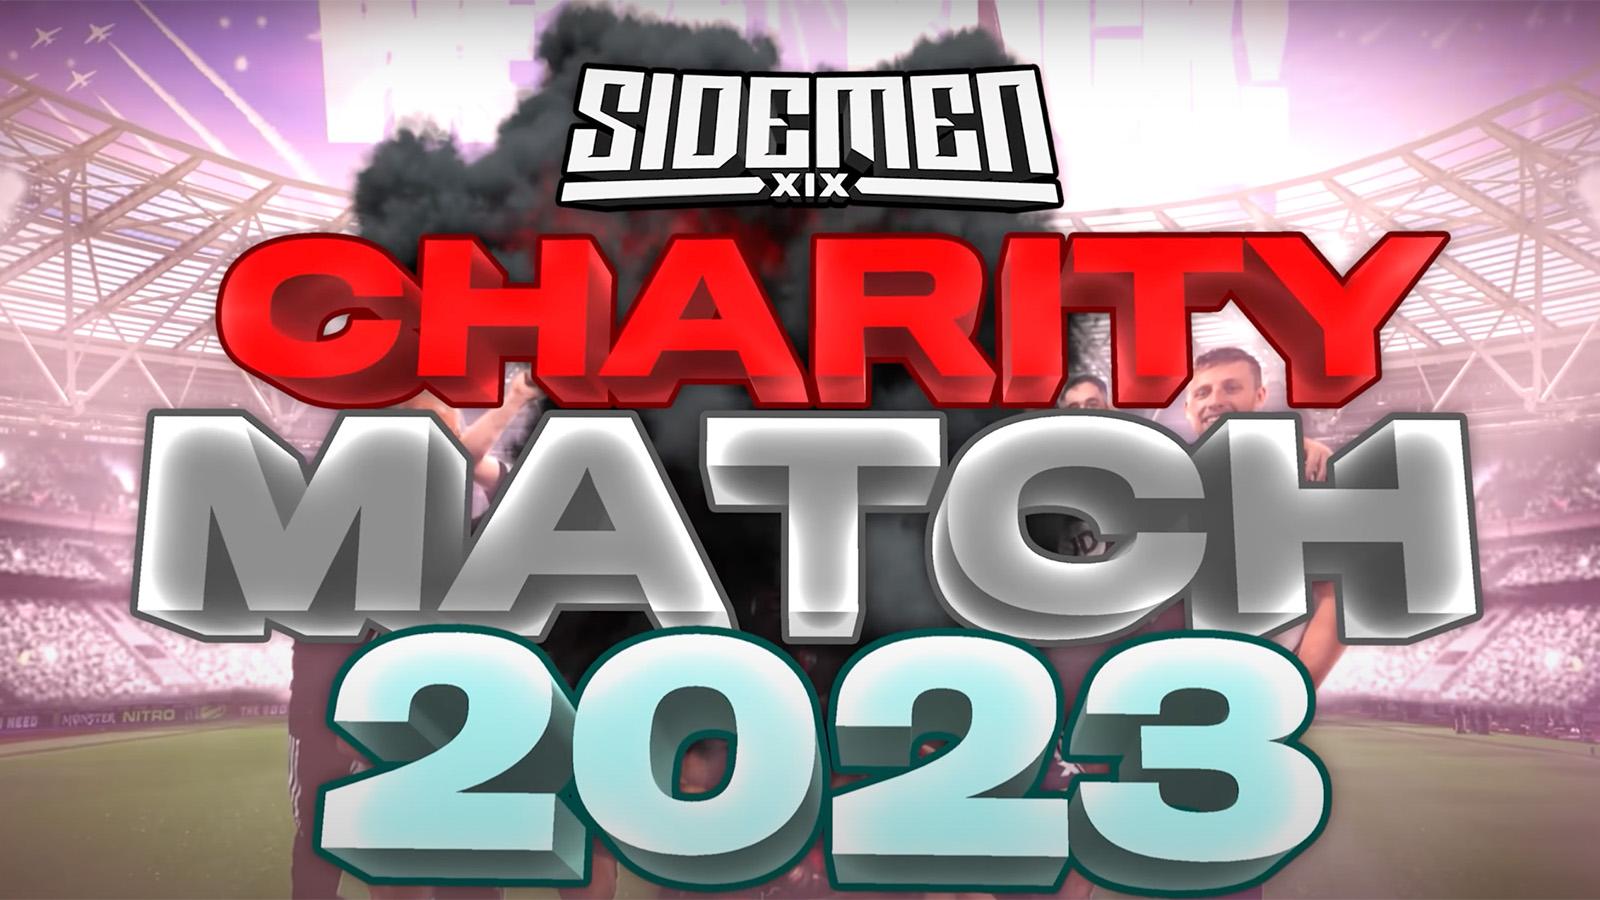 Sidemen Charity match 2023 header